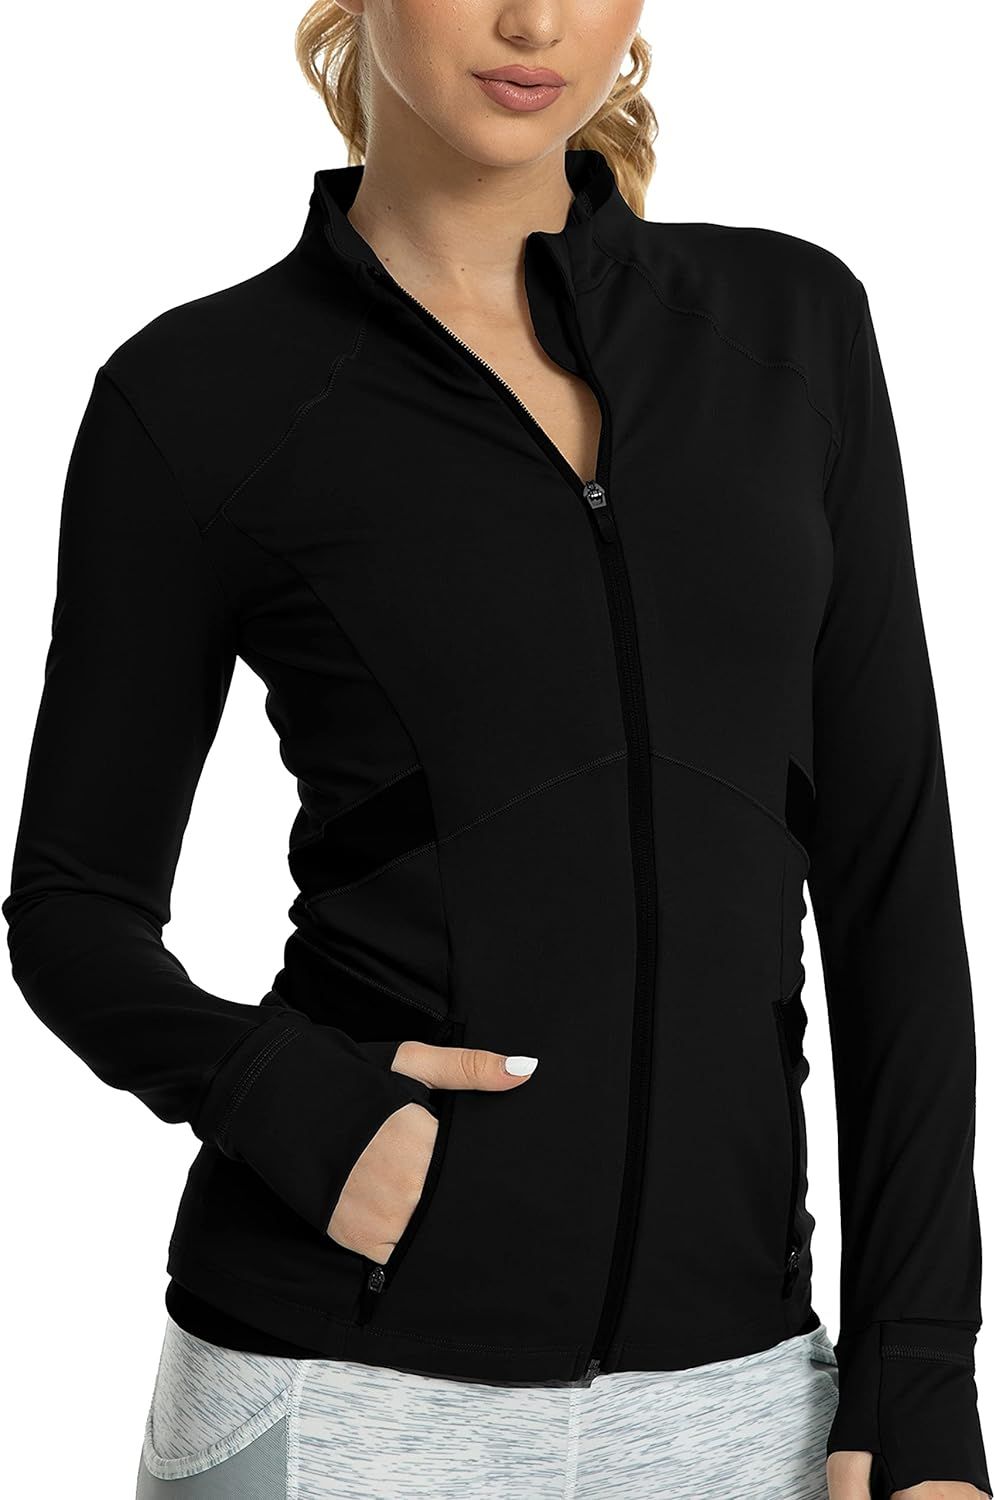 QUEENIEKE Women's Sports Jacket Slim Fit Running Jacket Cottony-Soft Handfeel 60927 | Amazon (US)